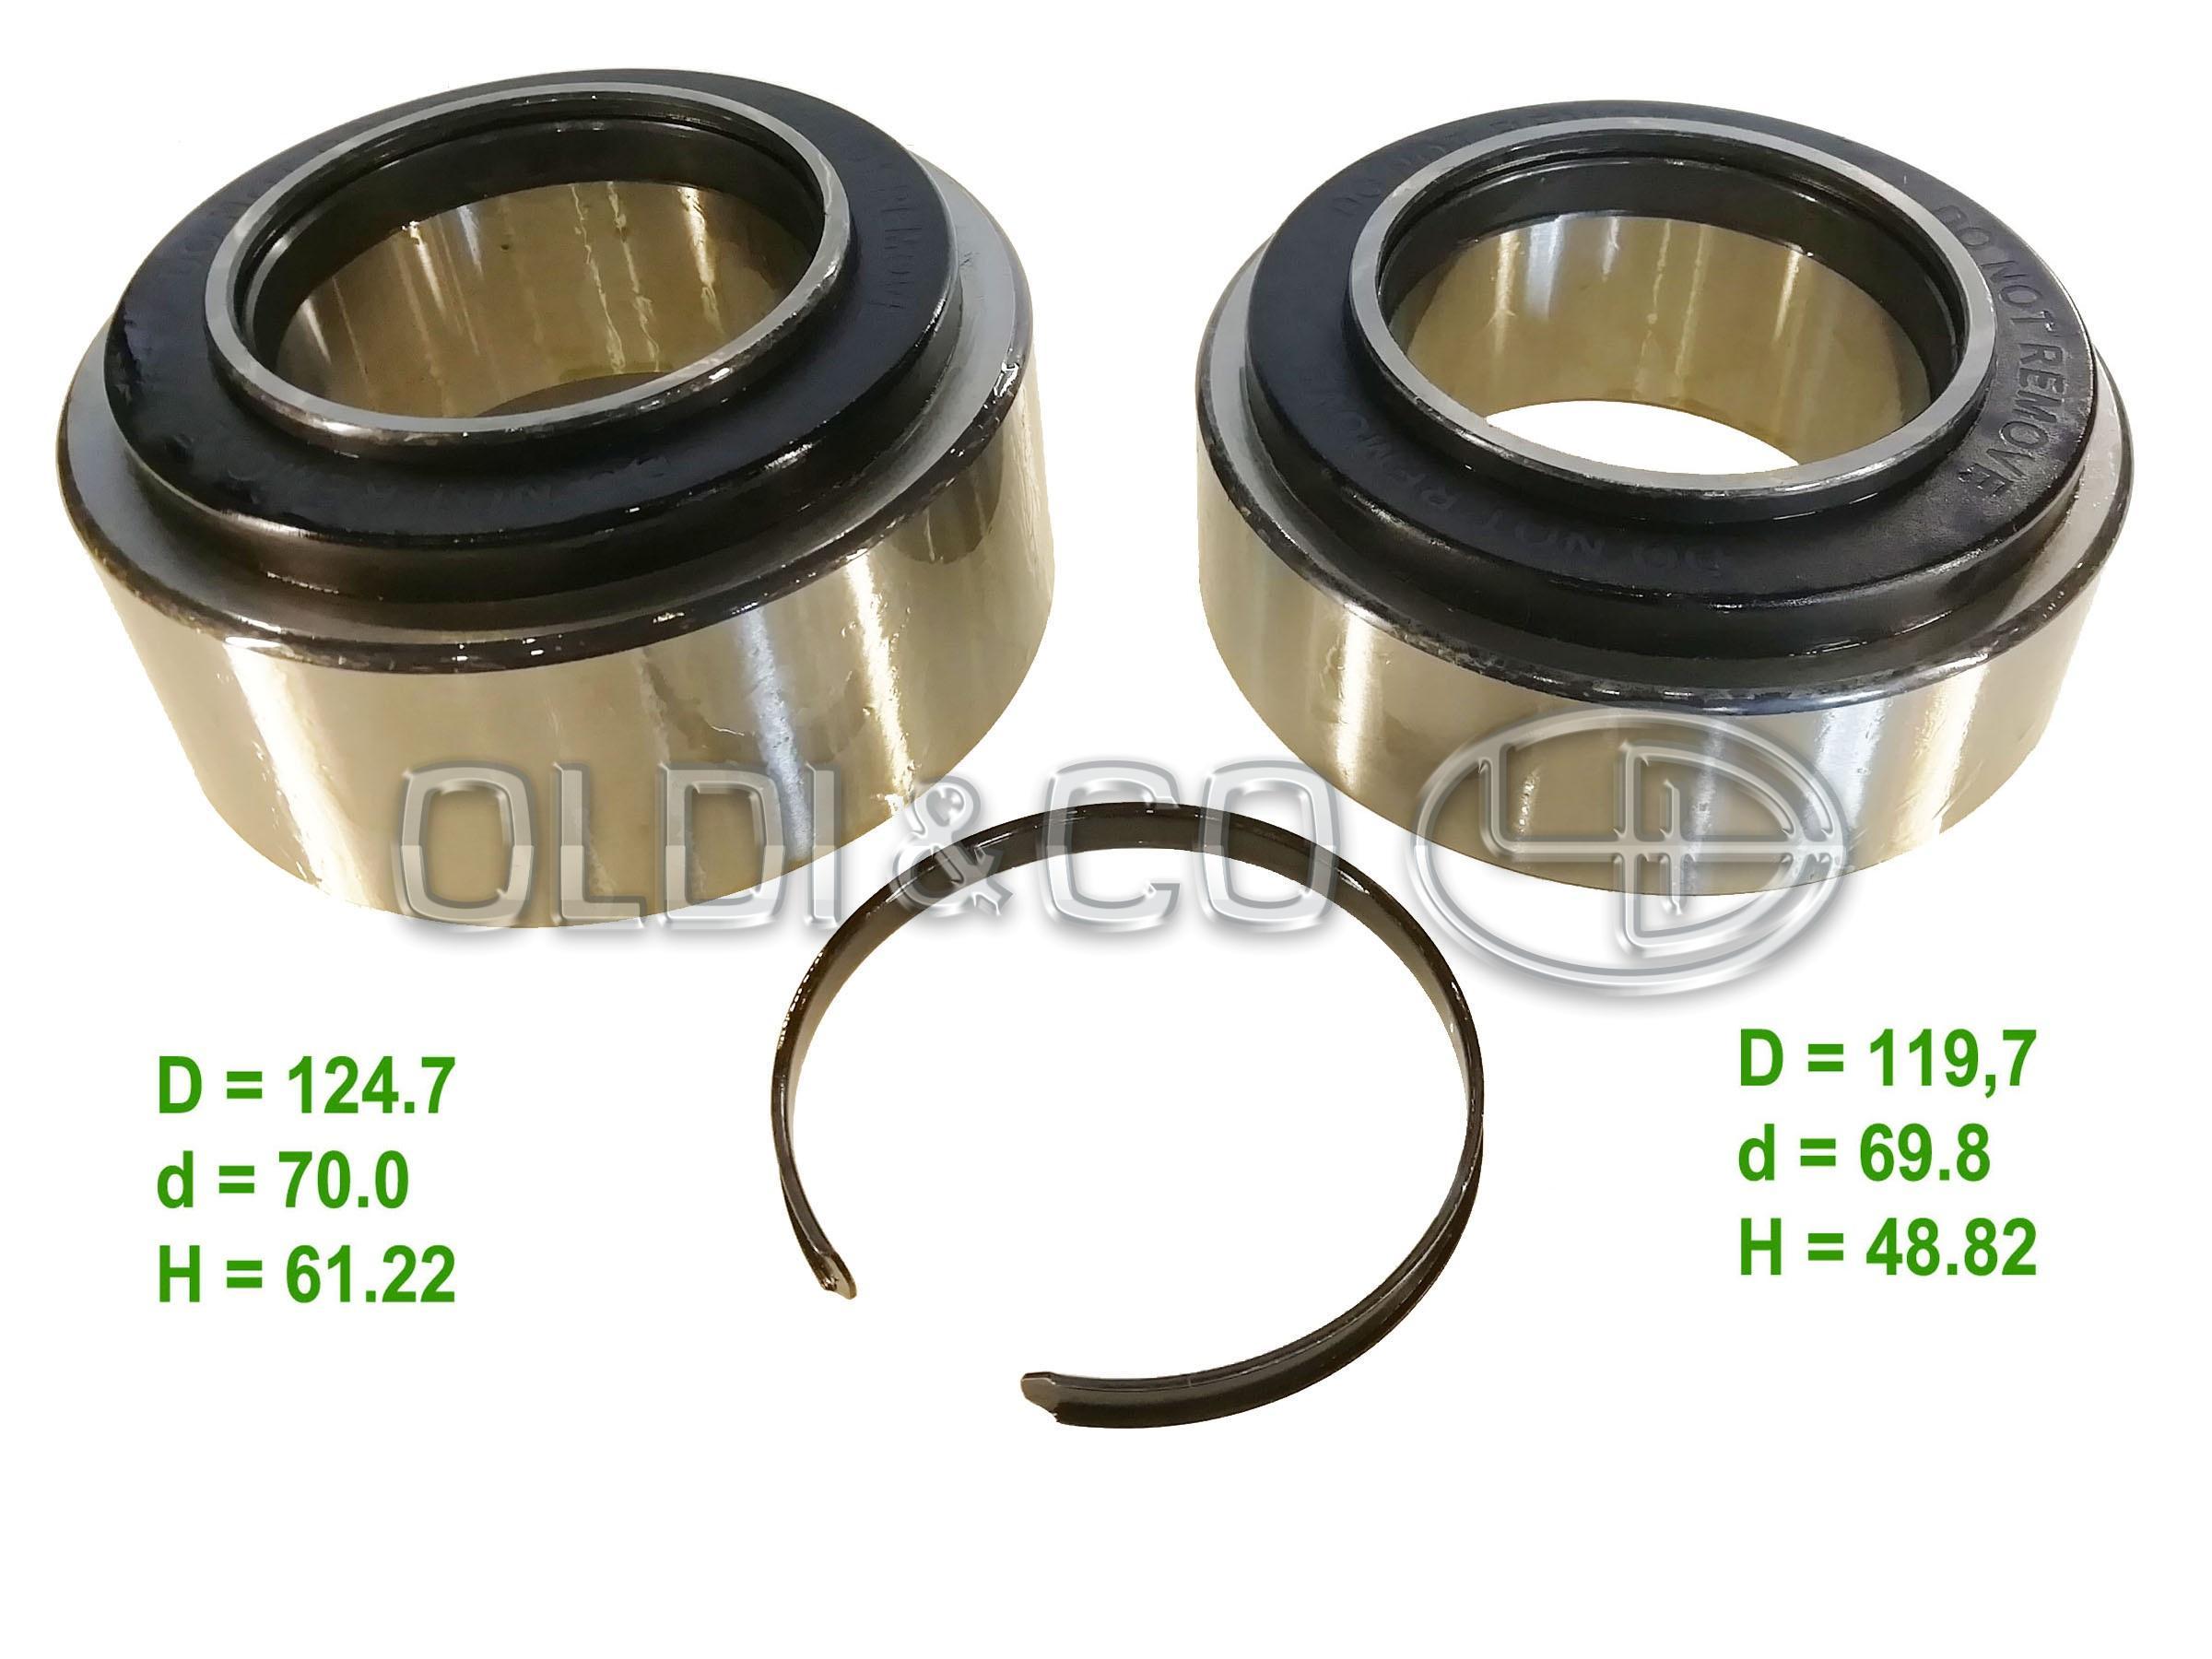 34.110.18185 Brake system → Hub rep. kit - bearings/seals